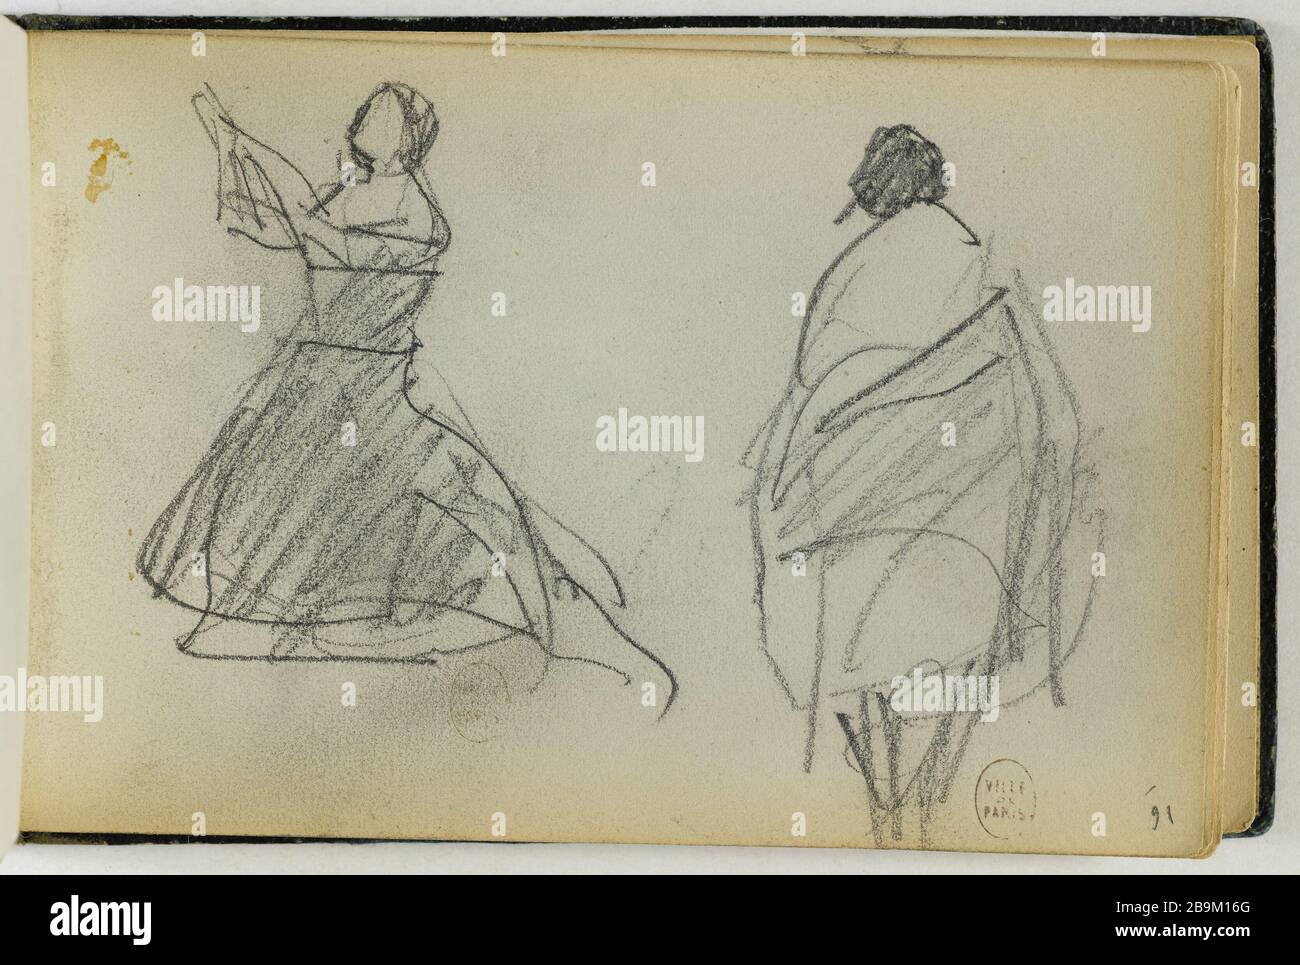 DESSIN D'UN CAHIER : DEUX SILHOUETTES (PAGE 16) Camille-Jean-Baptiste Corot (1796-1875). Carnet de croquis de dessins : silhouettes de deux (page 16). Crayon. Paris, musée Carnavalet. Banque D'Images